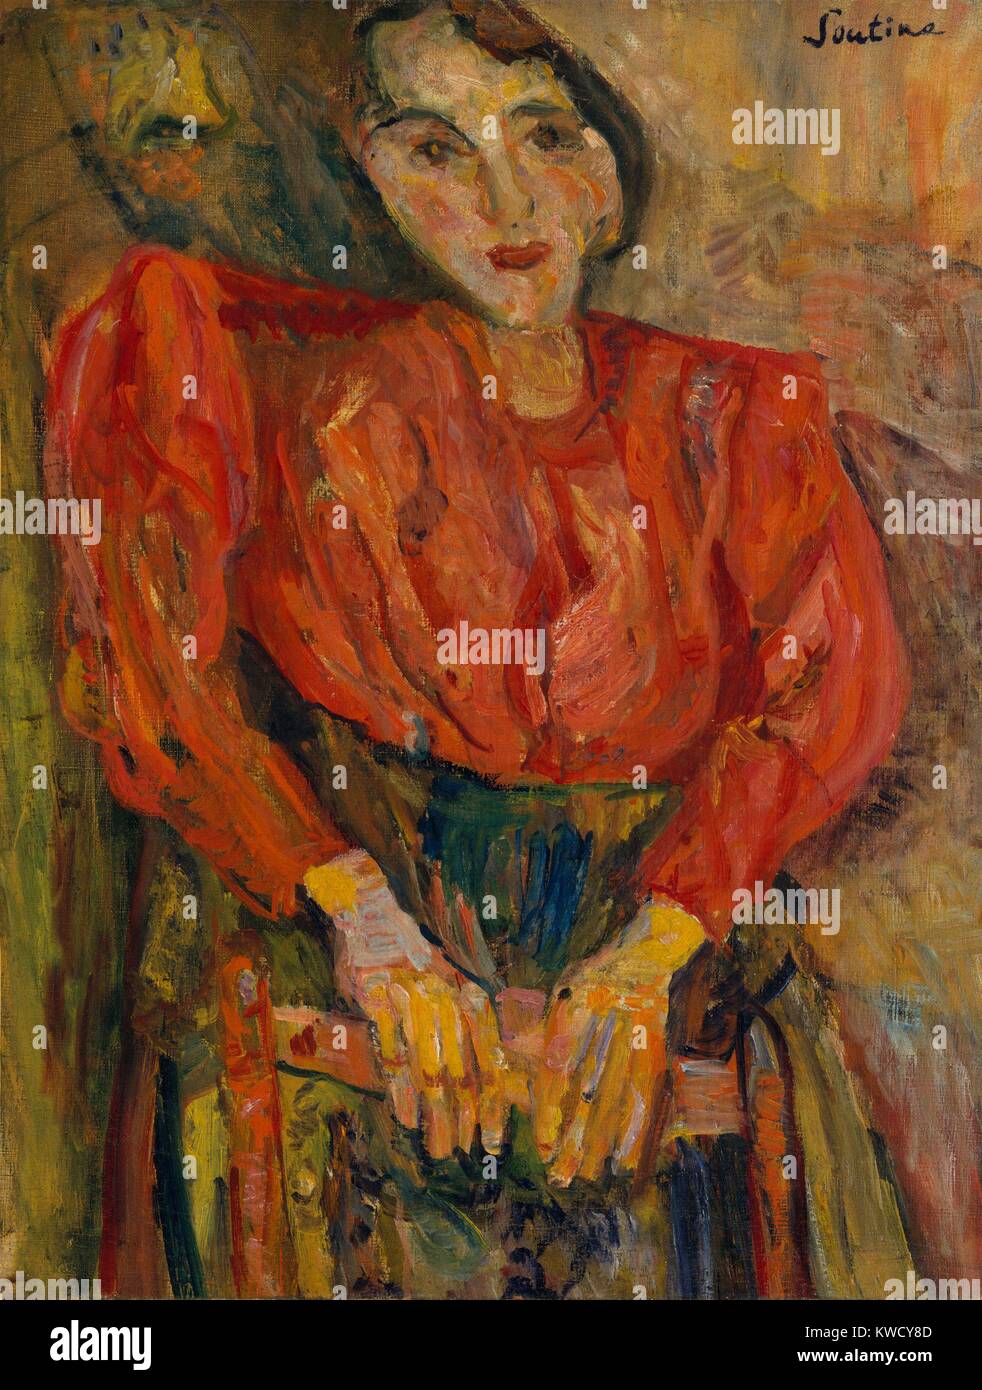 Femme en blouse rouge, par Chaïm Soutine, 1919, la peinture expressionniste Russe Français, huile sur toile. L'artiste peinture appliquée dans un empâtement épais, couvrant la toile, pinceau énergiques, et émotionnellement dissonantes distorsion de formes humaines (BSLOC 2017 5 149) Banque D'Images